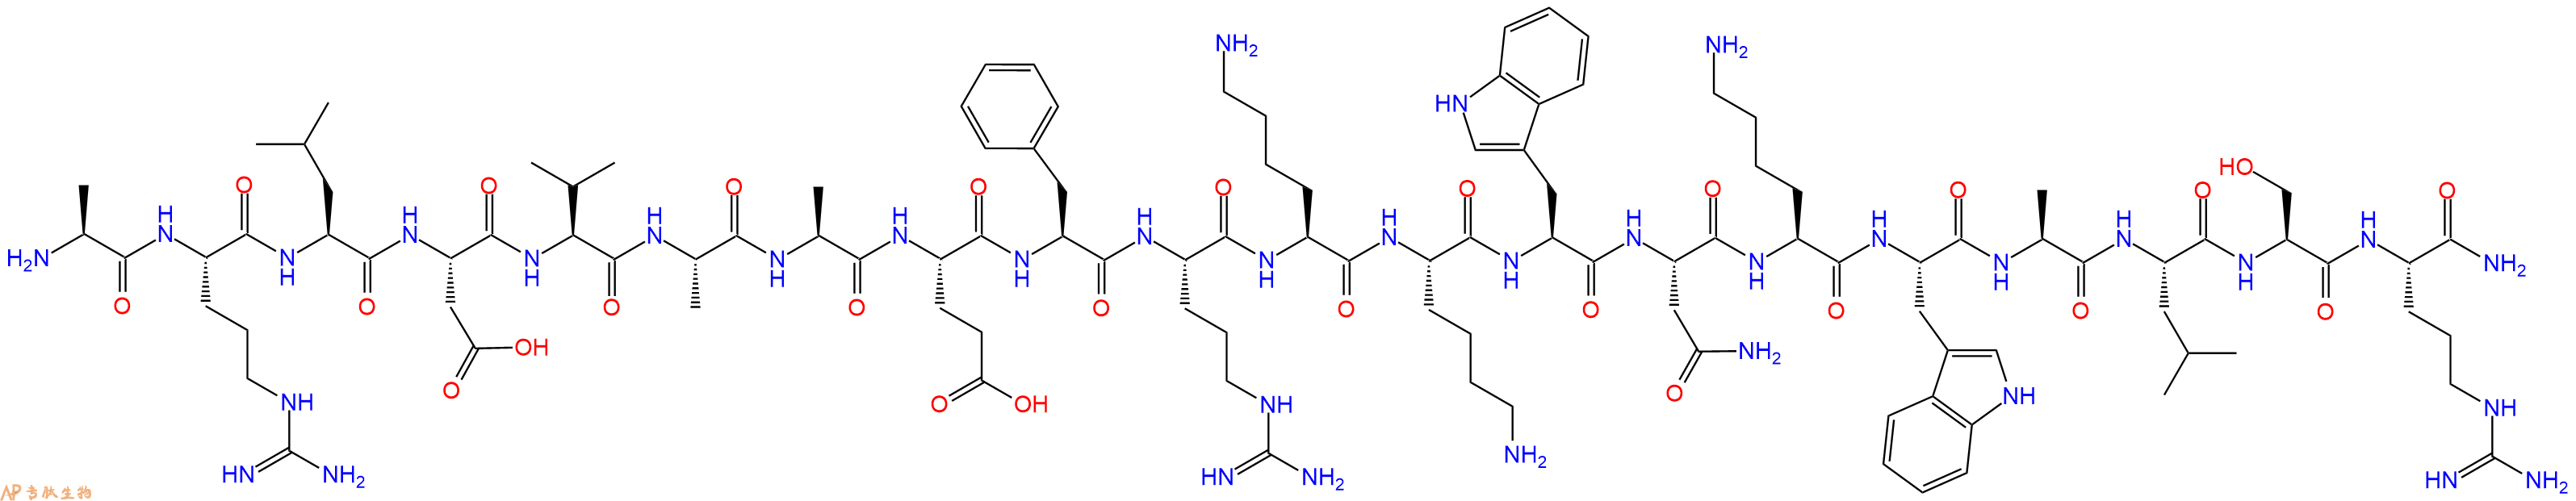 专肽生物产品肾上腺髓质素 Pro-Adrenomedullin(N-20), porcine